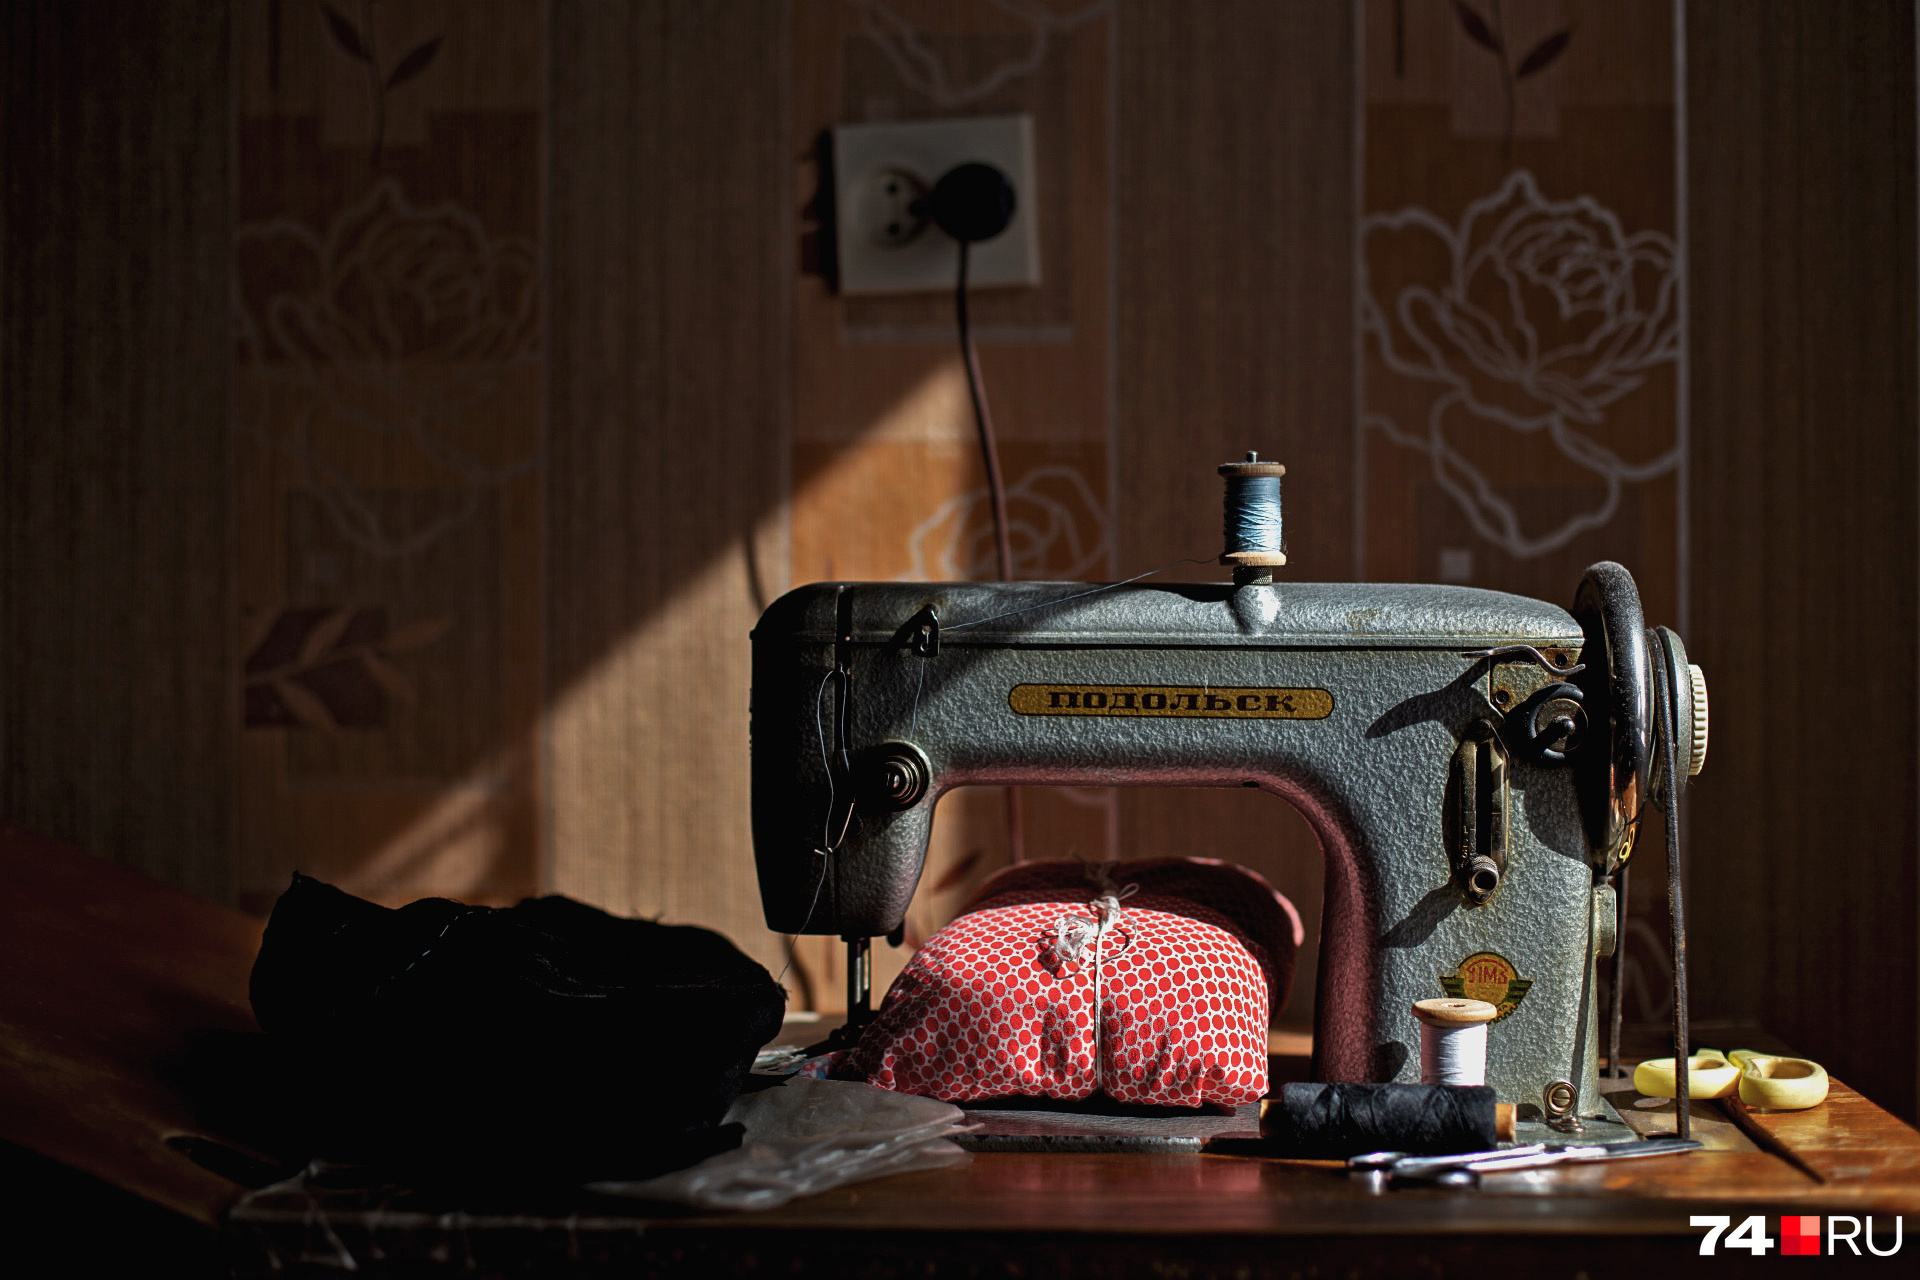 Швейная машинка «Подольск» без дела в комнате бабы Ани не стоит 